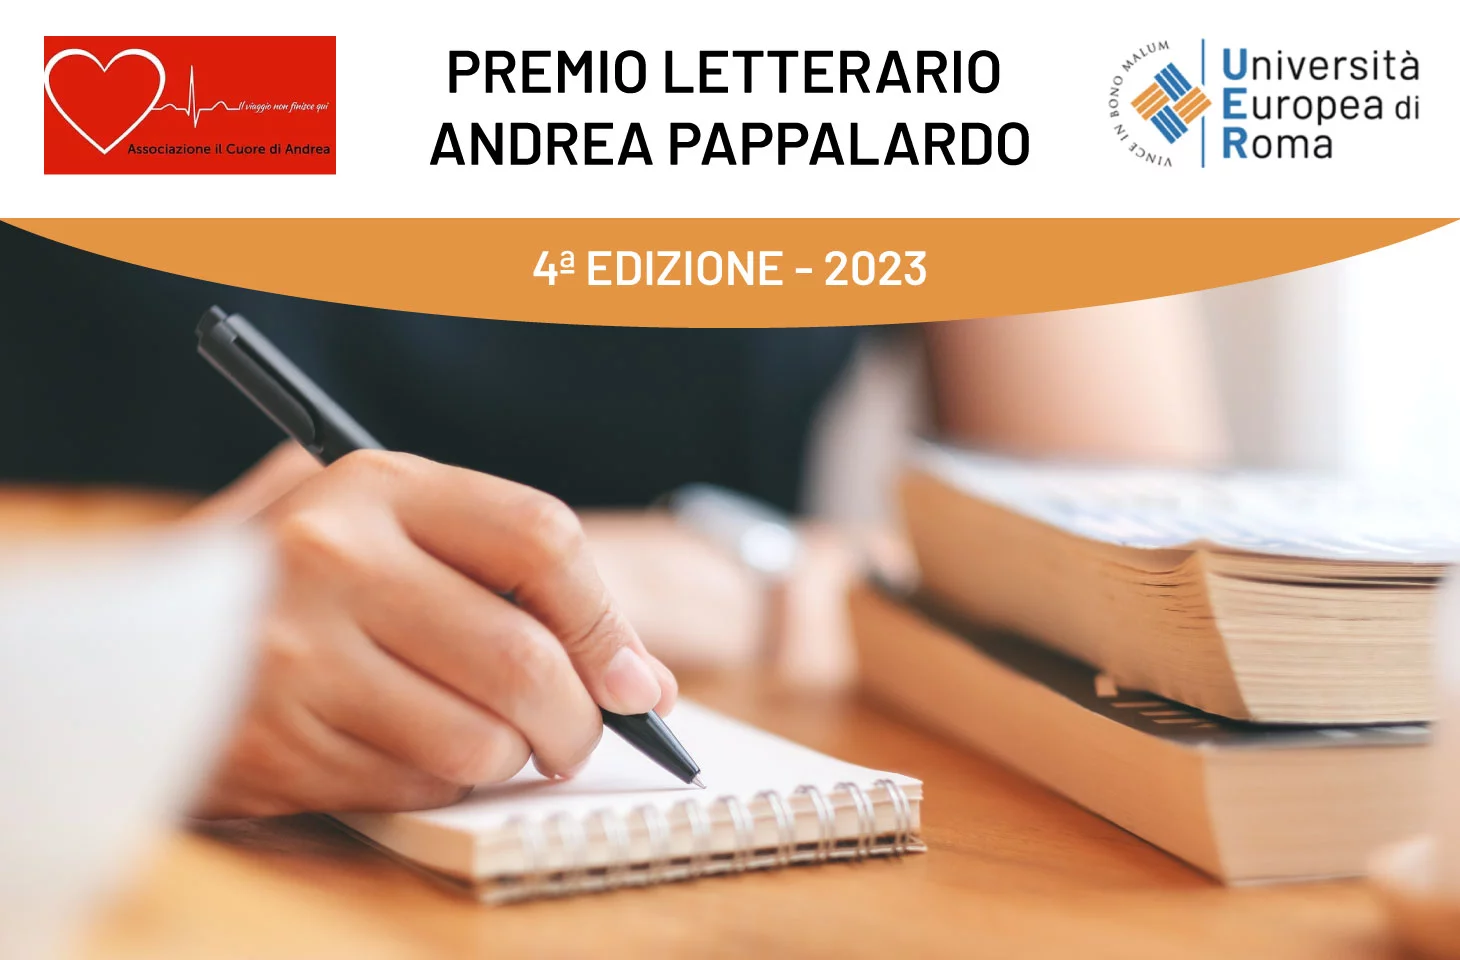 Quarta edizione del premio letterario “Andrea Pappalardo”